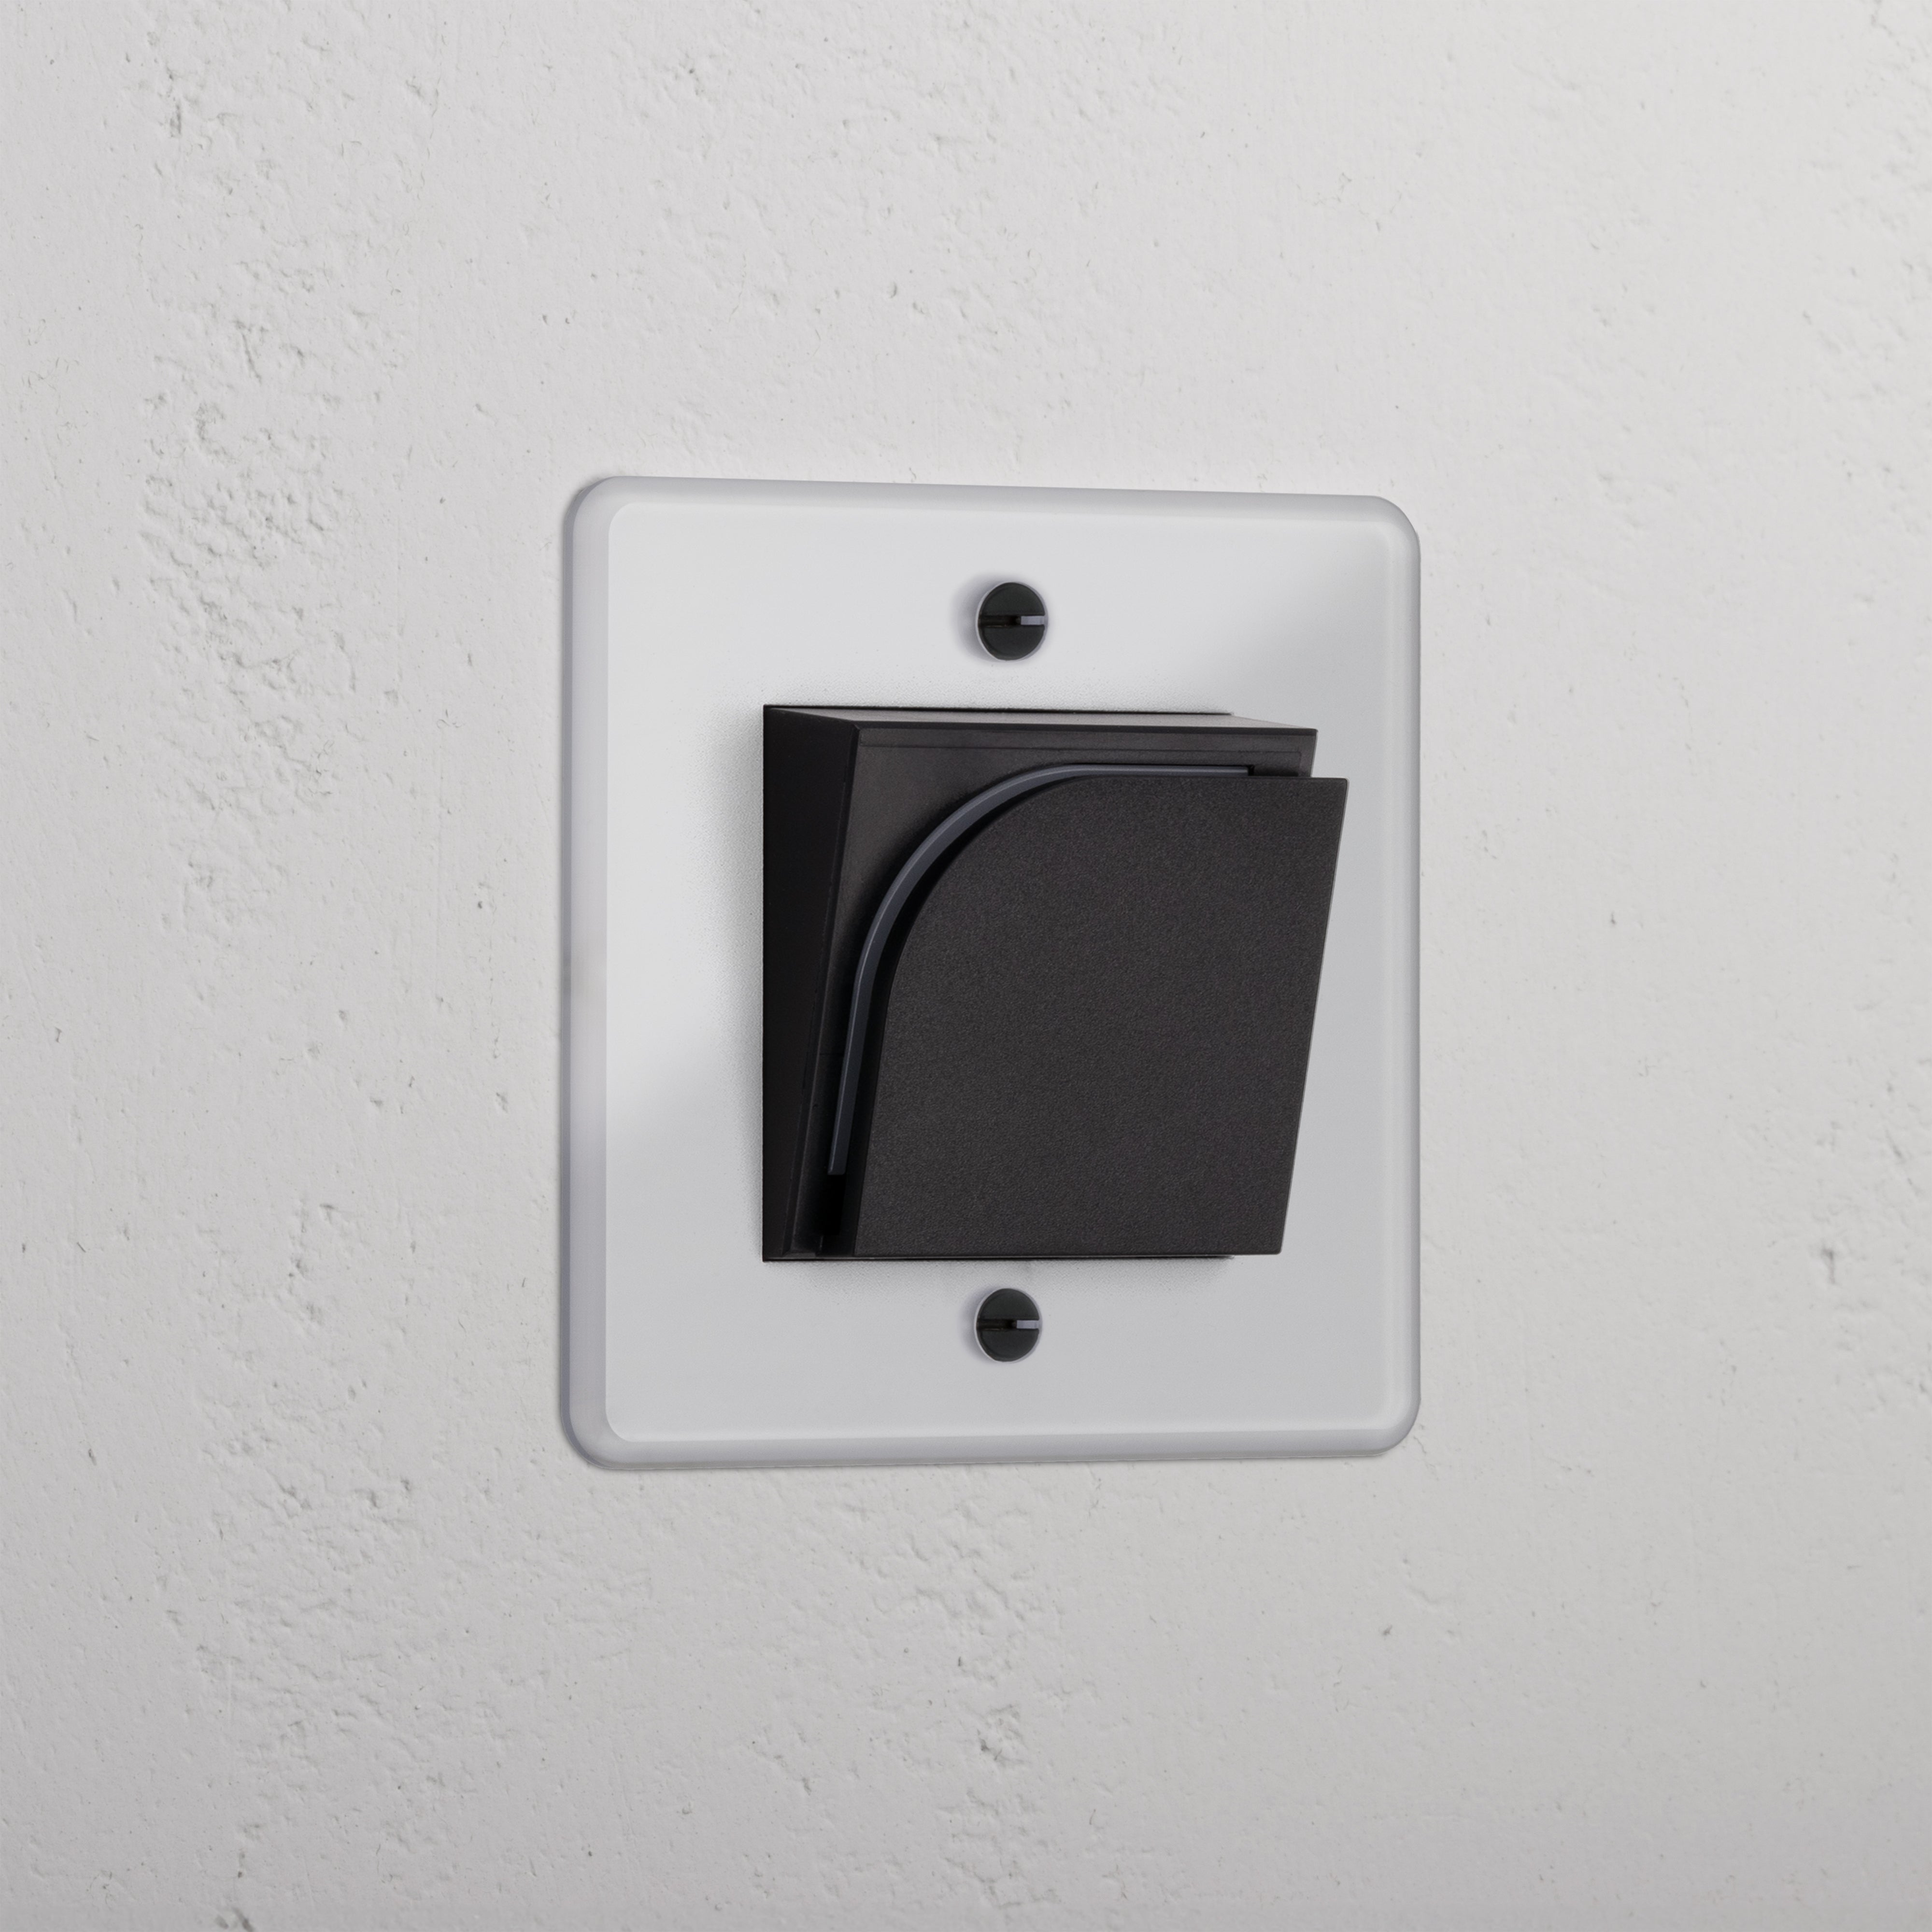 Interruptor simple hotelero para llave tarjeta - Traslúcido y negro